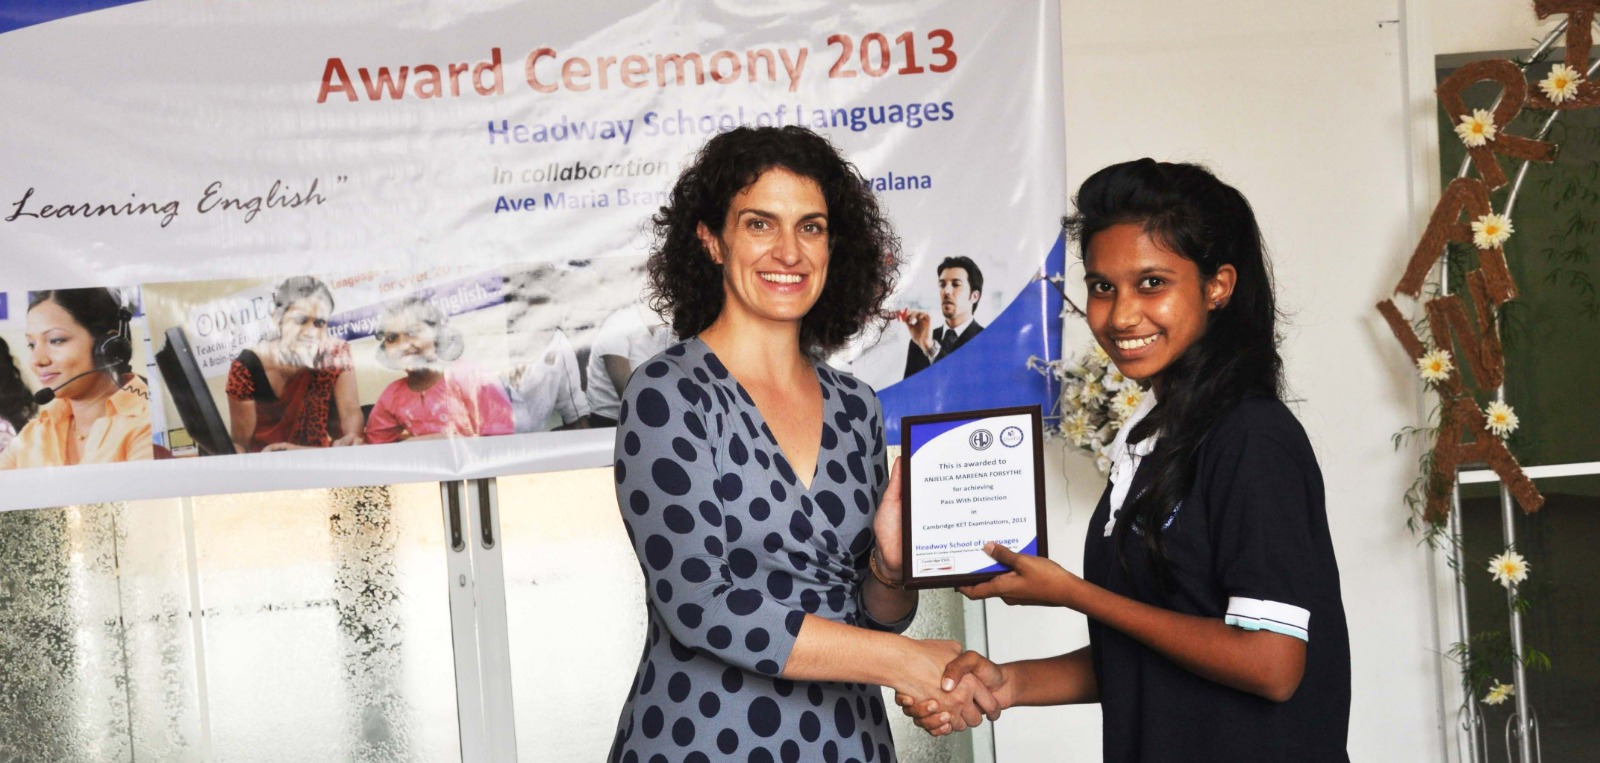 1st Award Ceremony at Bolowalana Ave Maria Convent – Negombo